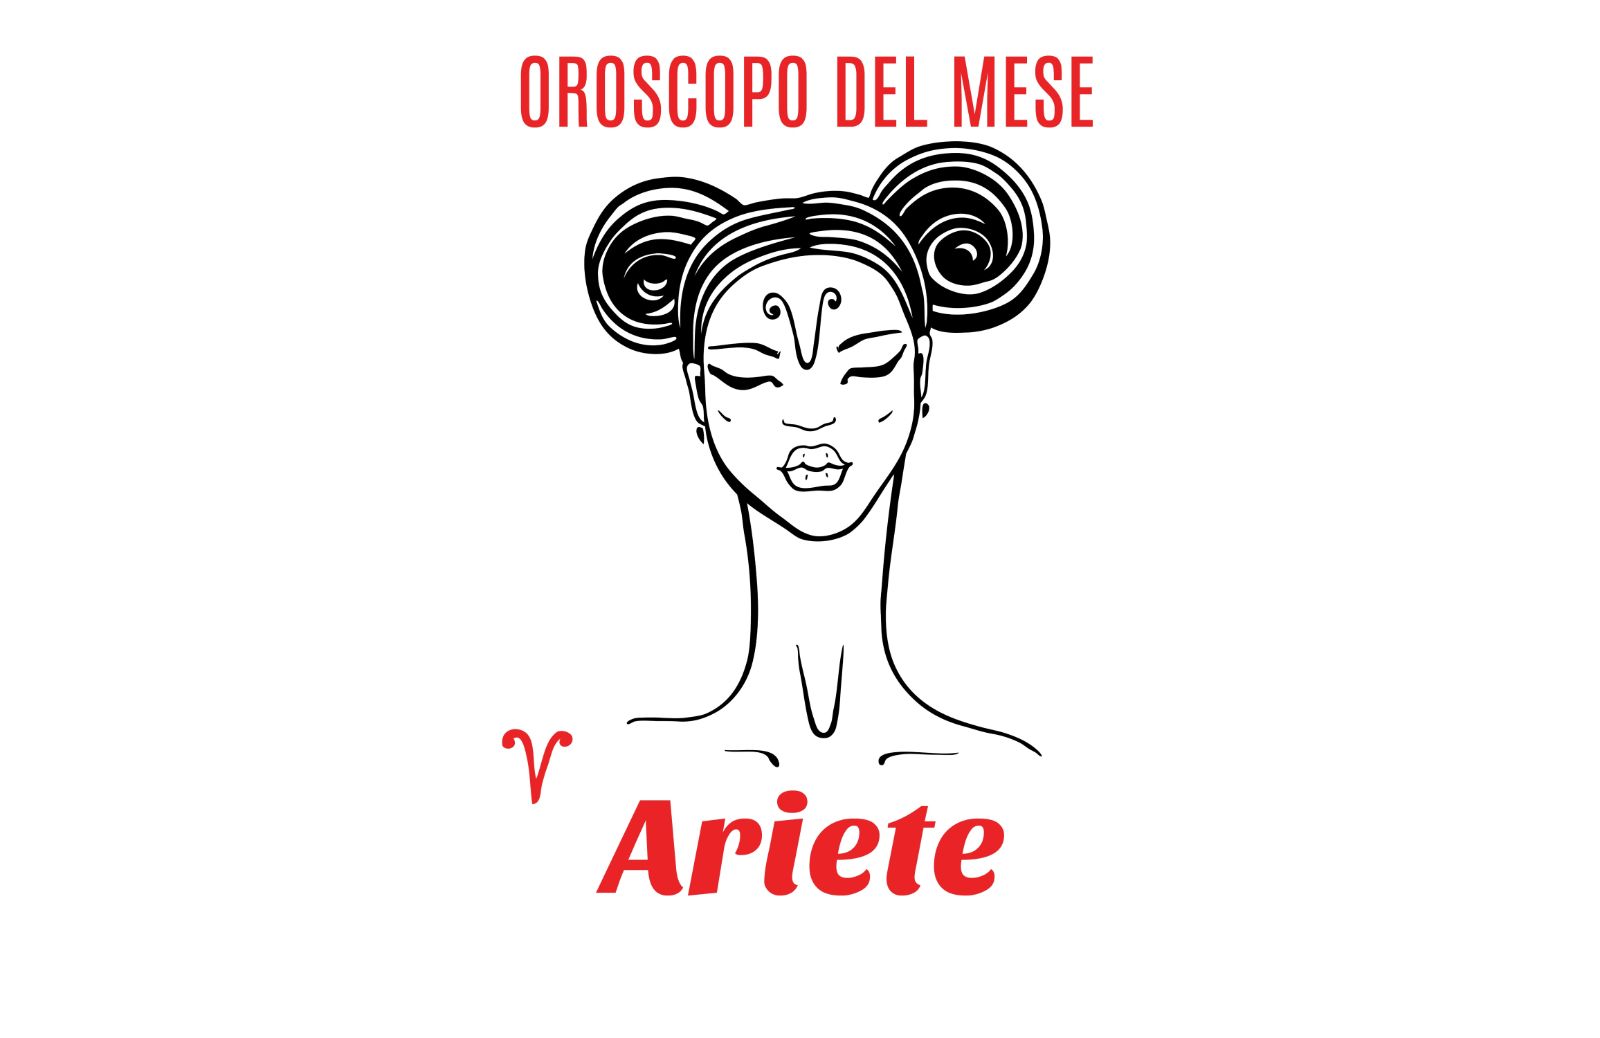 Oroscopo del mese: Ariete - gennaio 2019